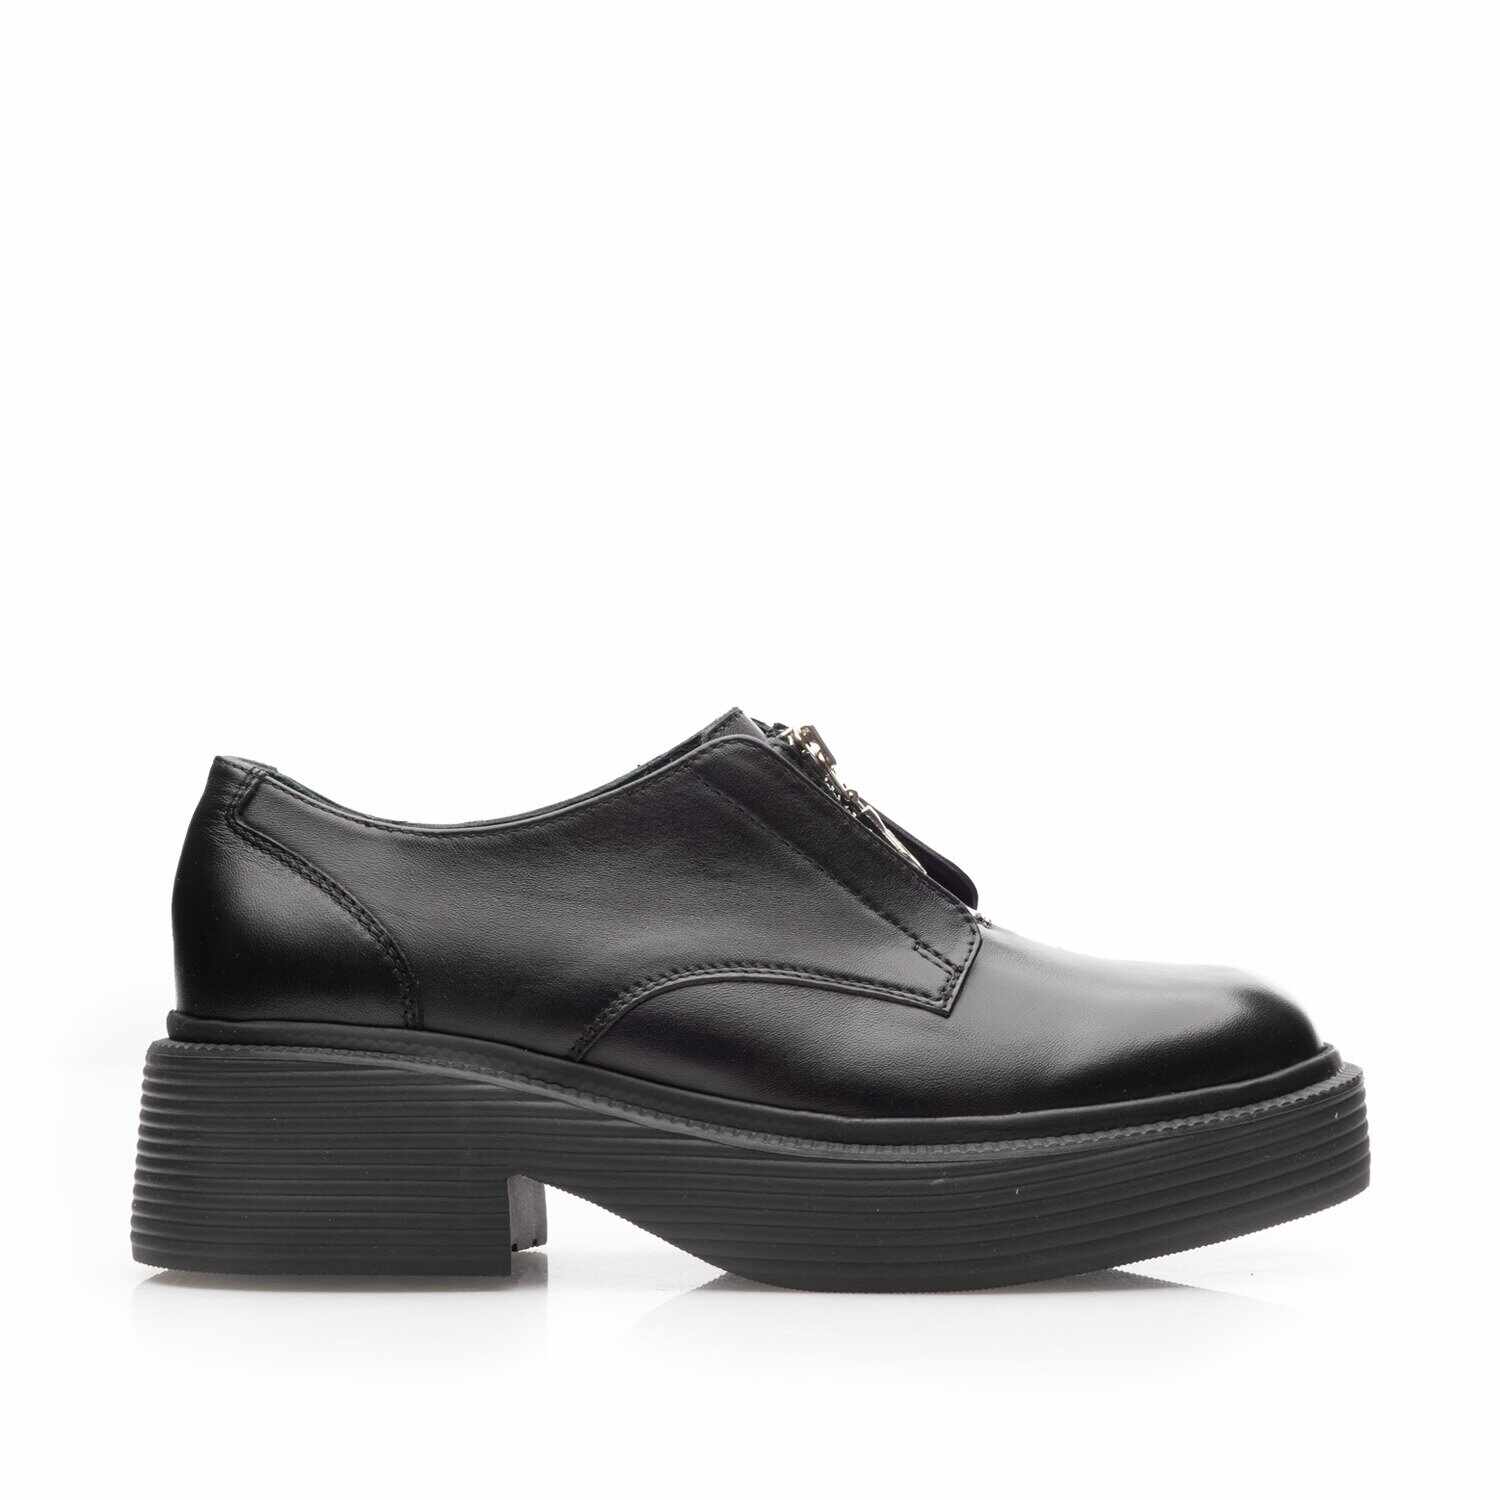 Pantofi casual damă din piele naturală, Leofex - 378 Negru Box